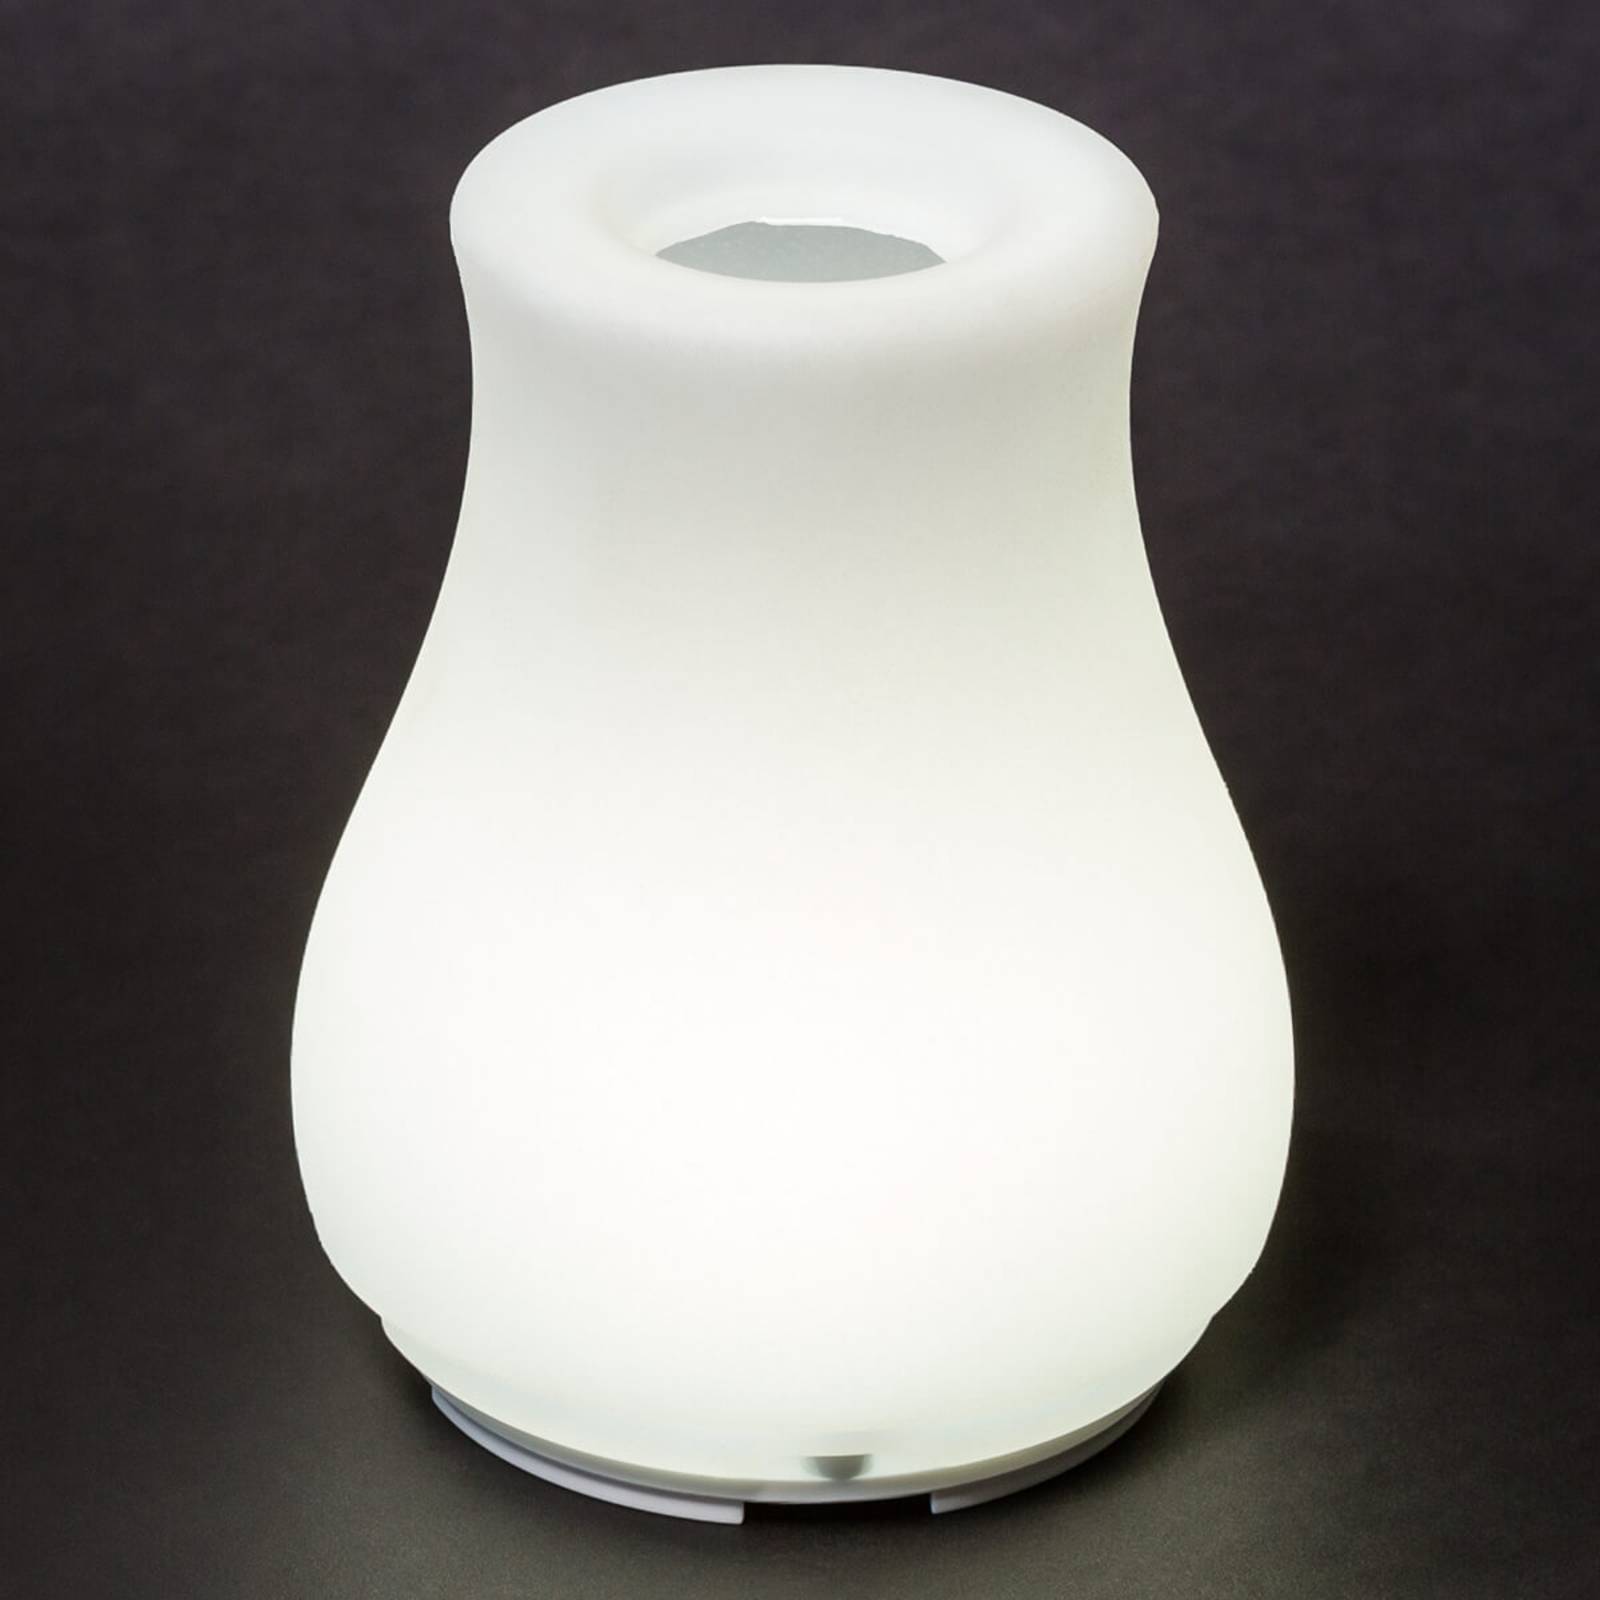 Olio - szabályozható LED fényforrás és váza